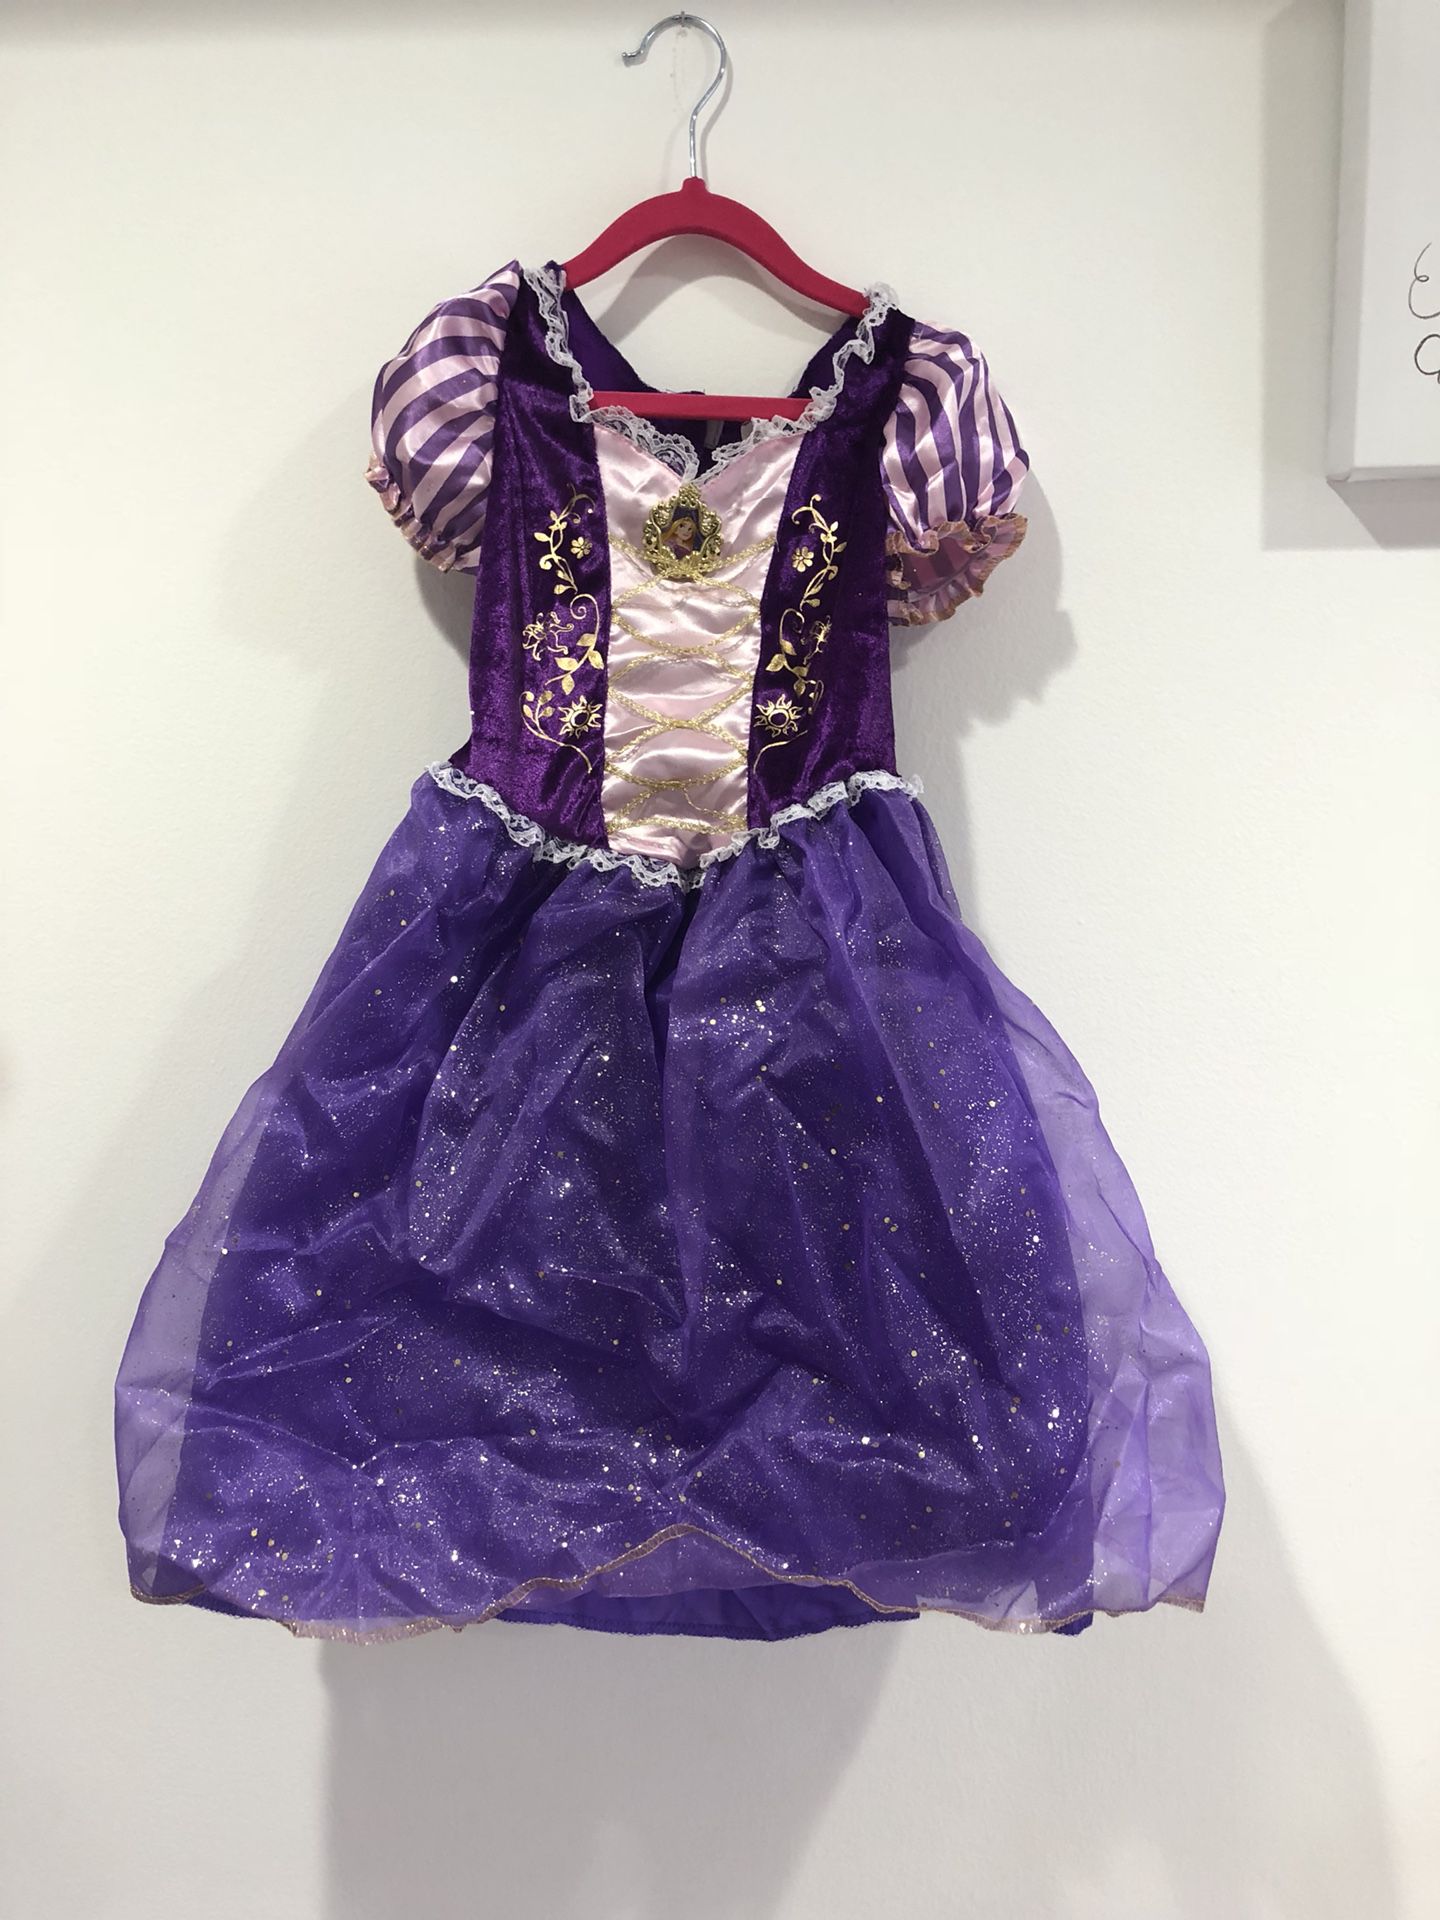 Rapunzel dress for Halloween size 4-6